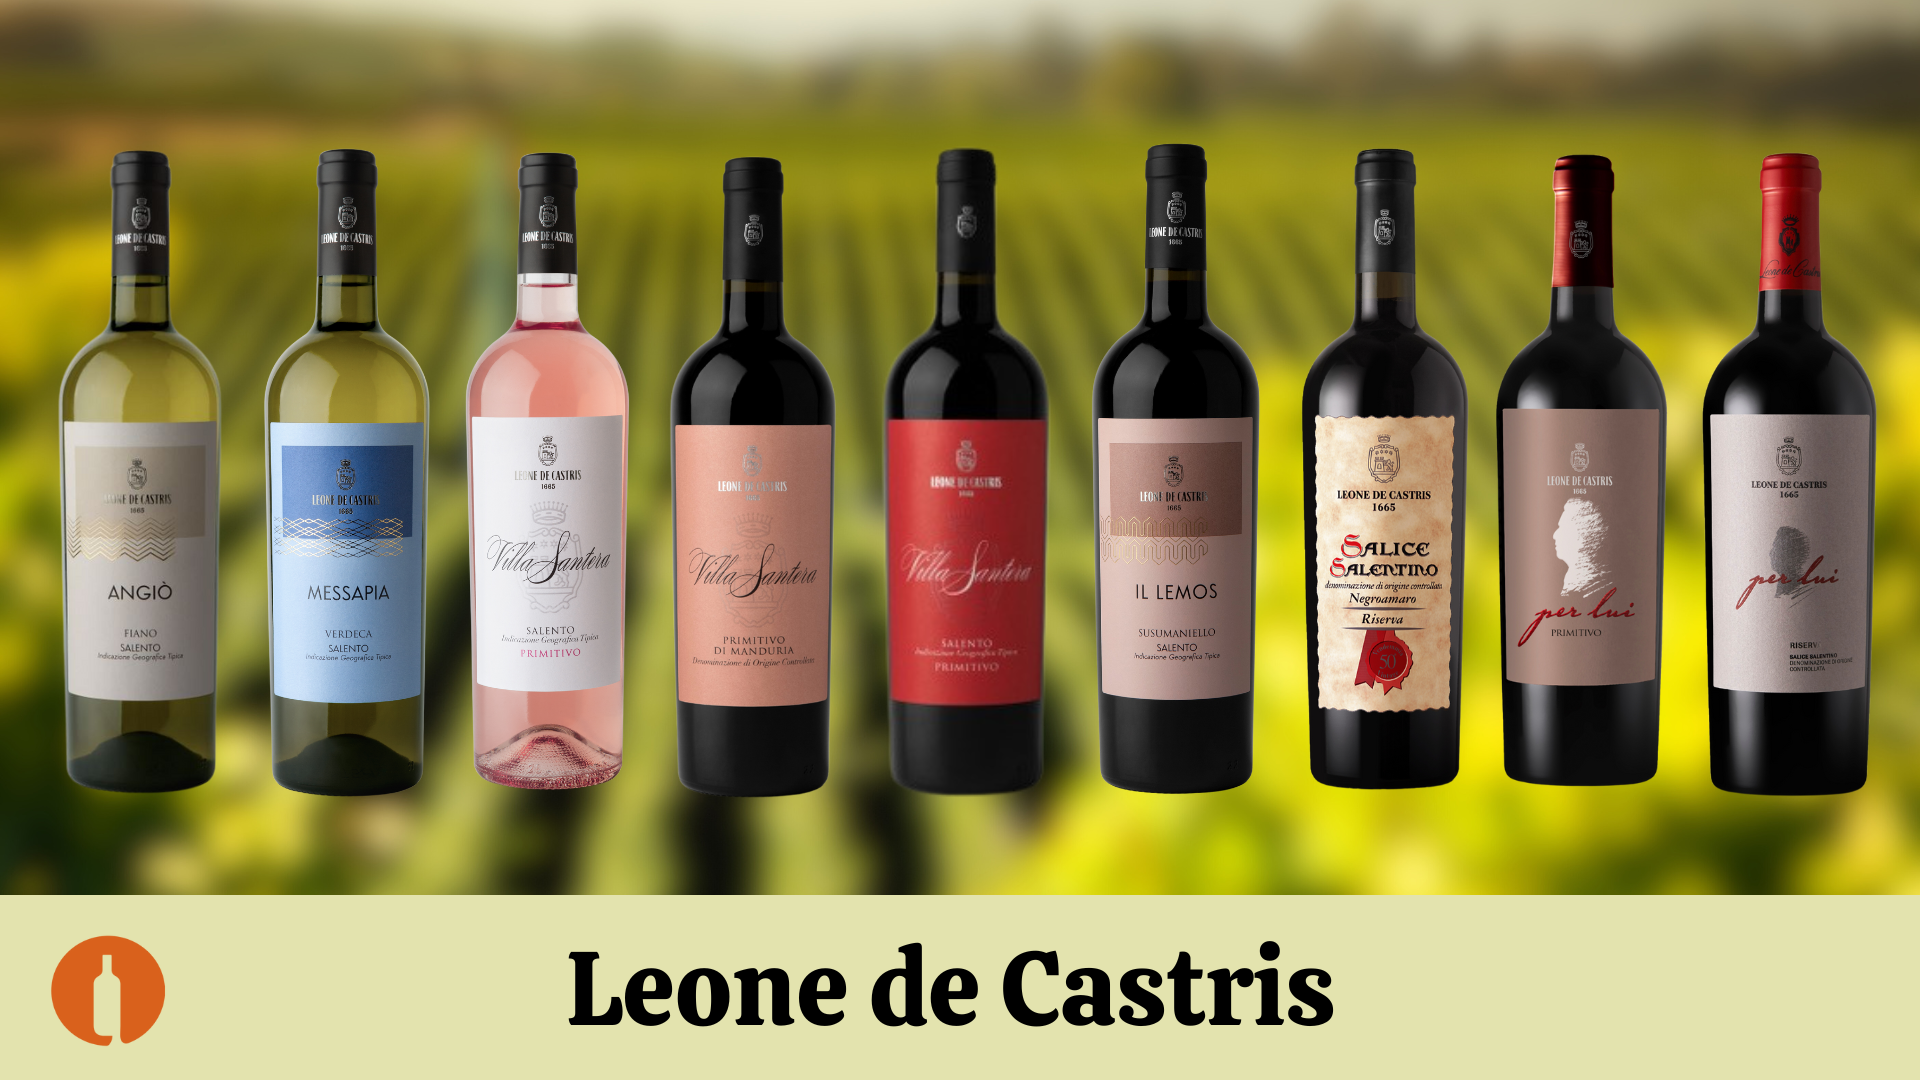 Uued veinid Itaaliast, Leone de Castris veinimõisast!